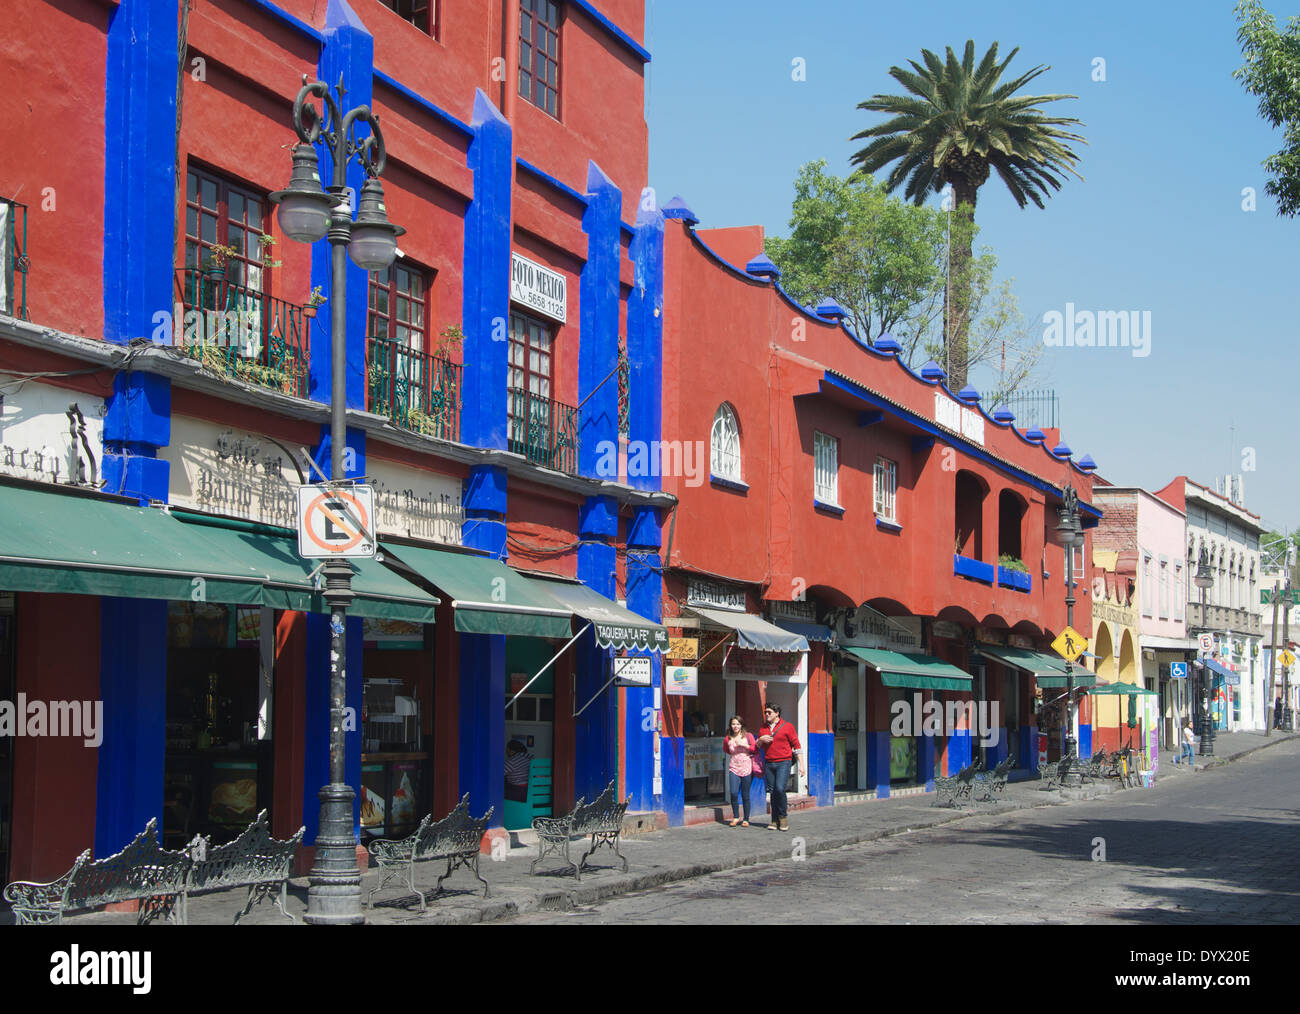 Avenida Santa Cruz de La principale rue commerçante de San Angel Mexico Mexique Banque D'Images